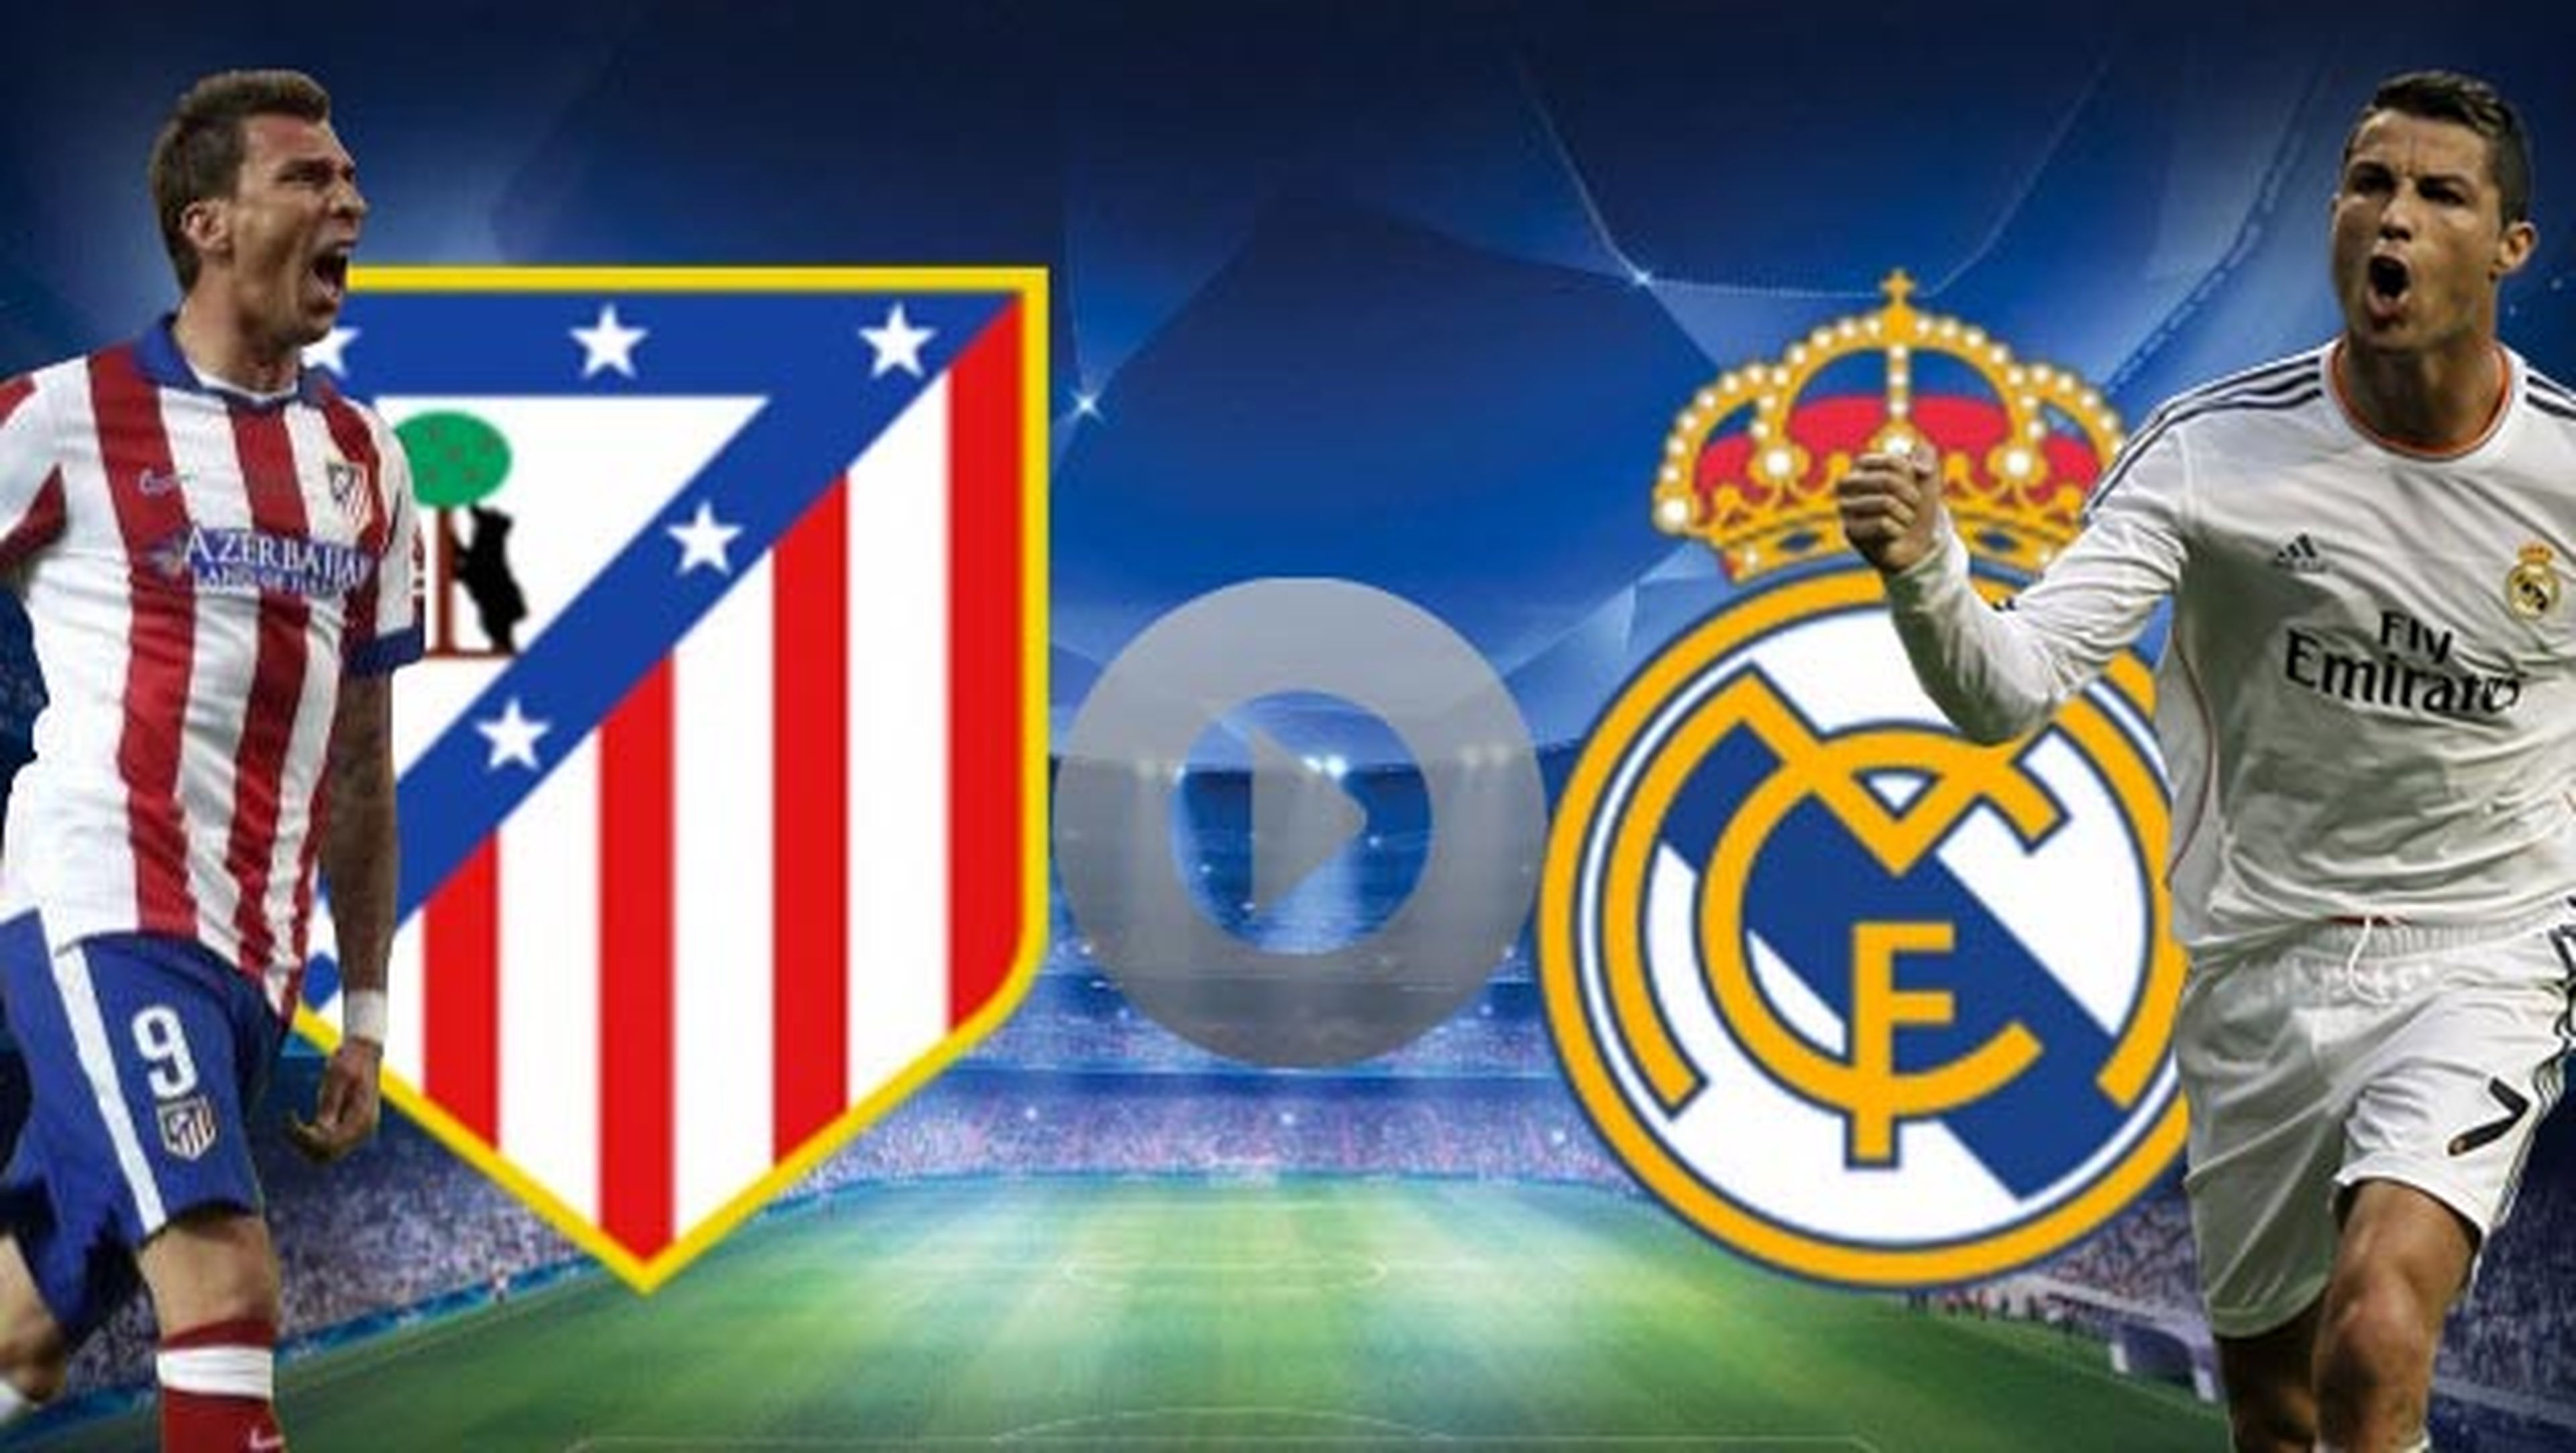 Ver online y en directo el Atlético de Madrid vs Real Madrid